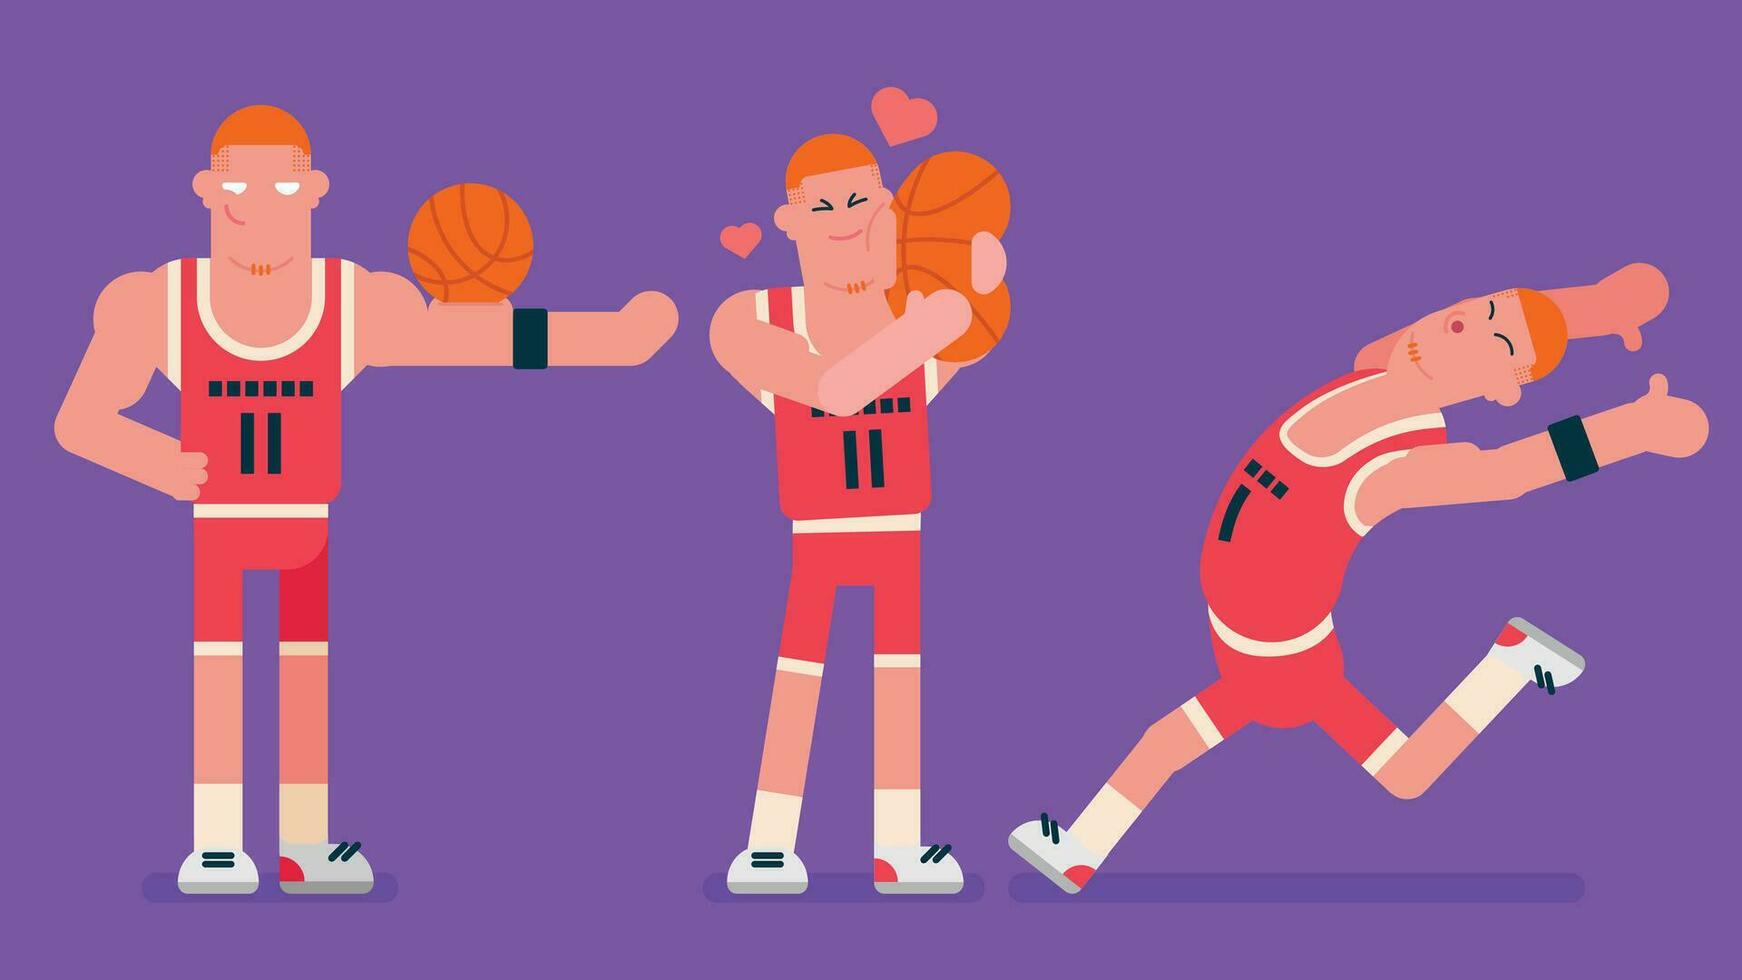 basketbal speler met rood basketbal dragen, rennen weg snel, rood haar- speler liefde zijn bal en geven haar een knuffel, proberen naar indruk maken tonen spieren, vlak avatar vector illustratie